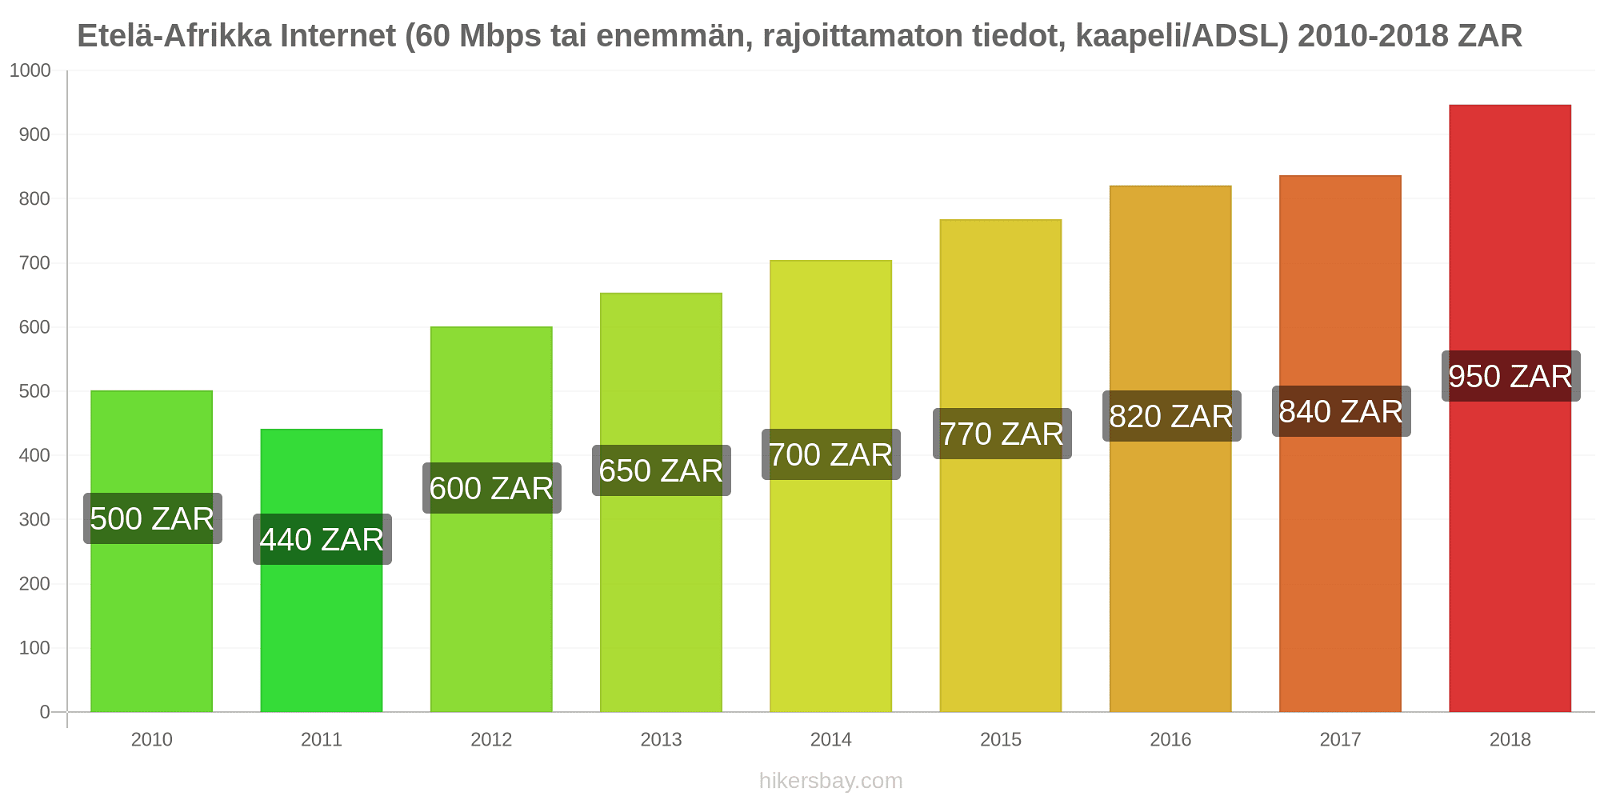 Etelä-Afrikka hintojen muutokset Internet (60 Mbps tai enemmän, rajoittamaton tiedot, kaapeli/ADSL) hikersbay.com